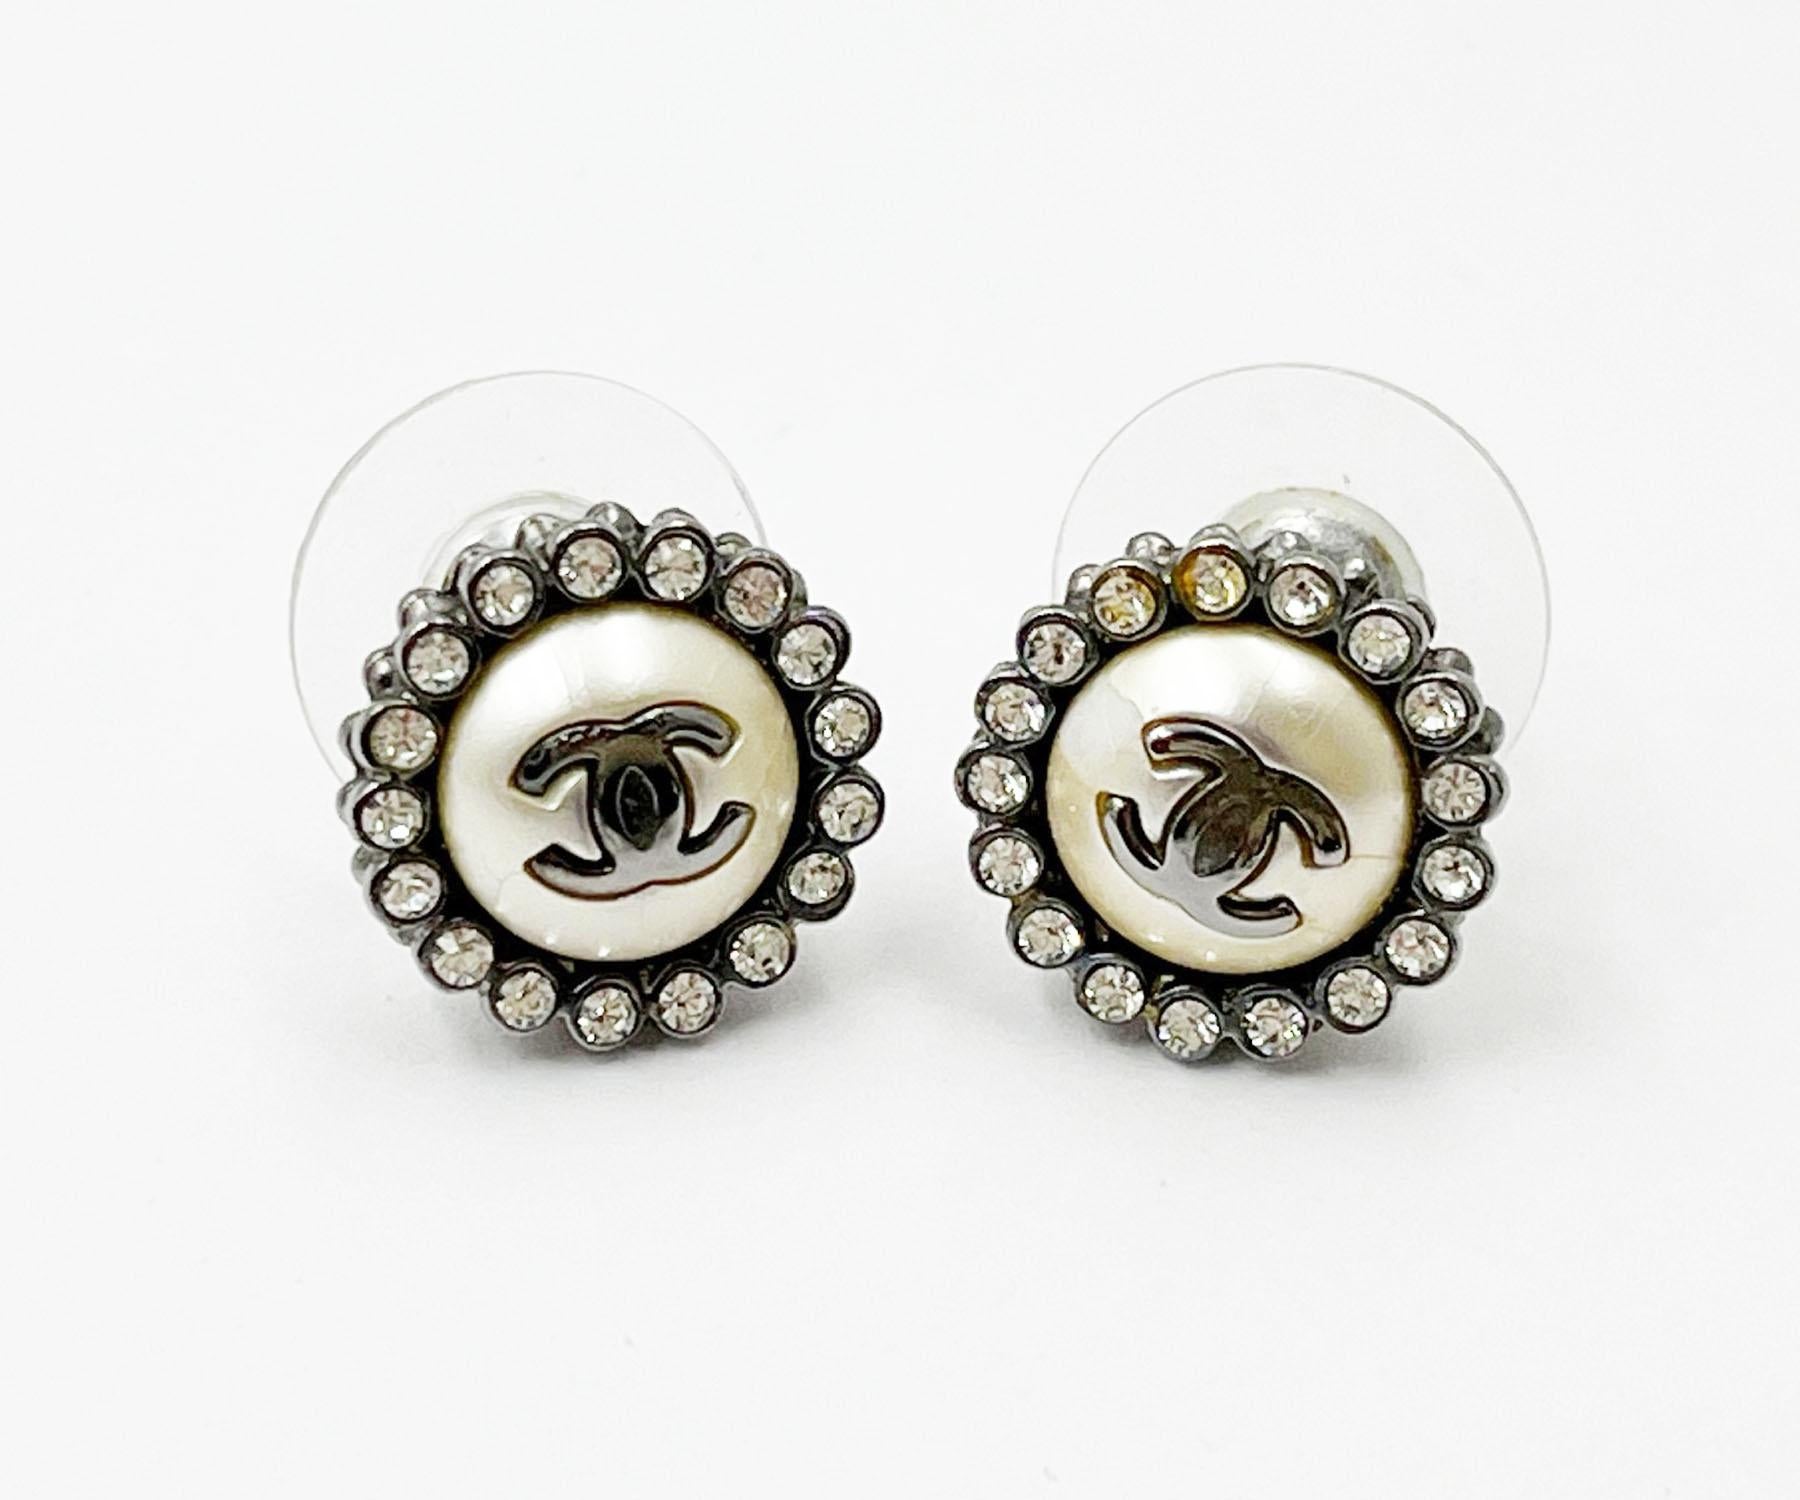 Chanel Gunmetal CC Runde Kristall-Ohrringe mit durchbrochenem Kristall

*Markiert 16
*Hergestellt in Frankreich

-Es ist ungefähr 0,5